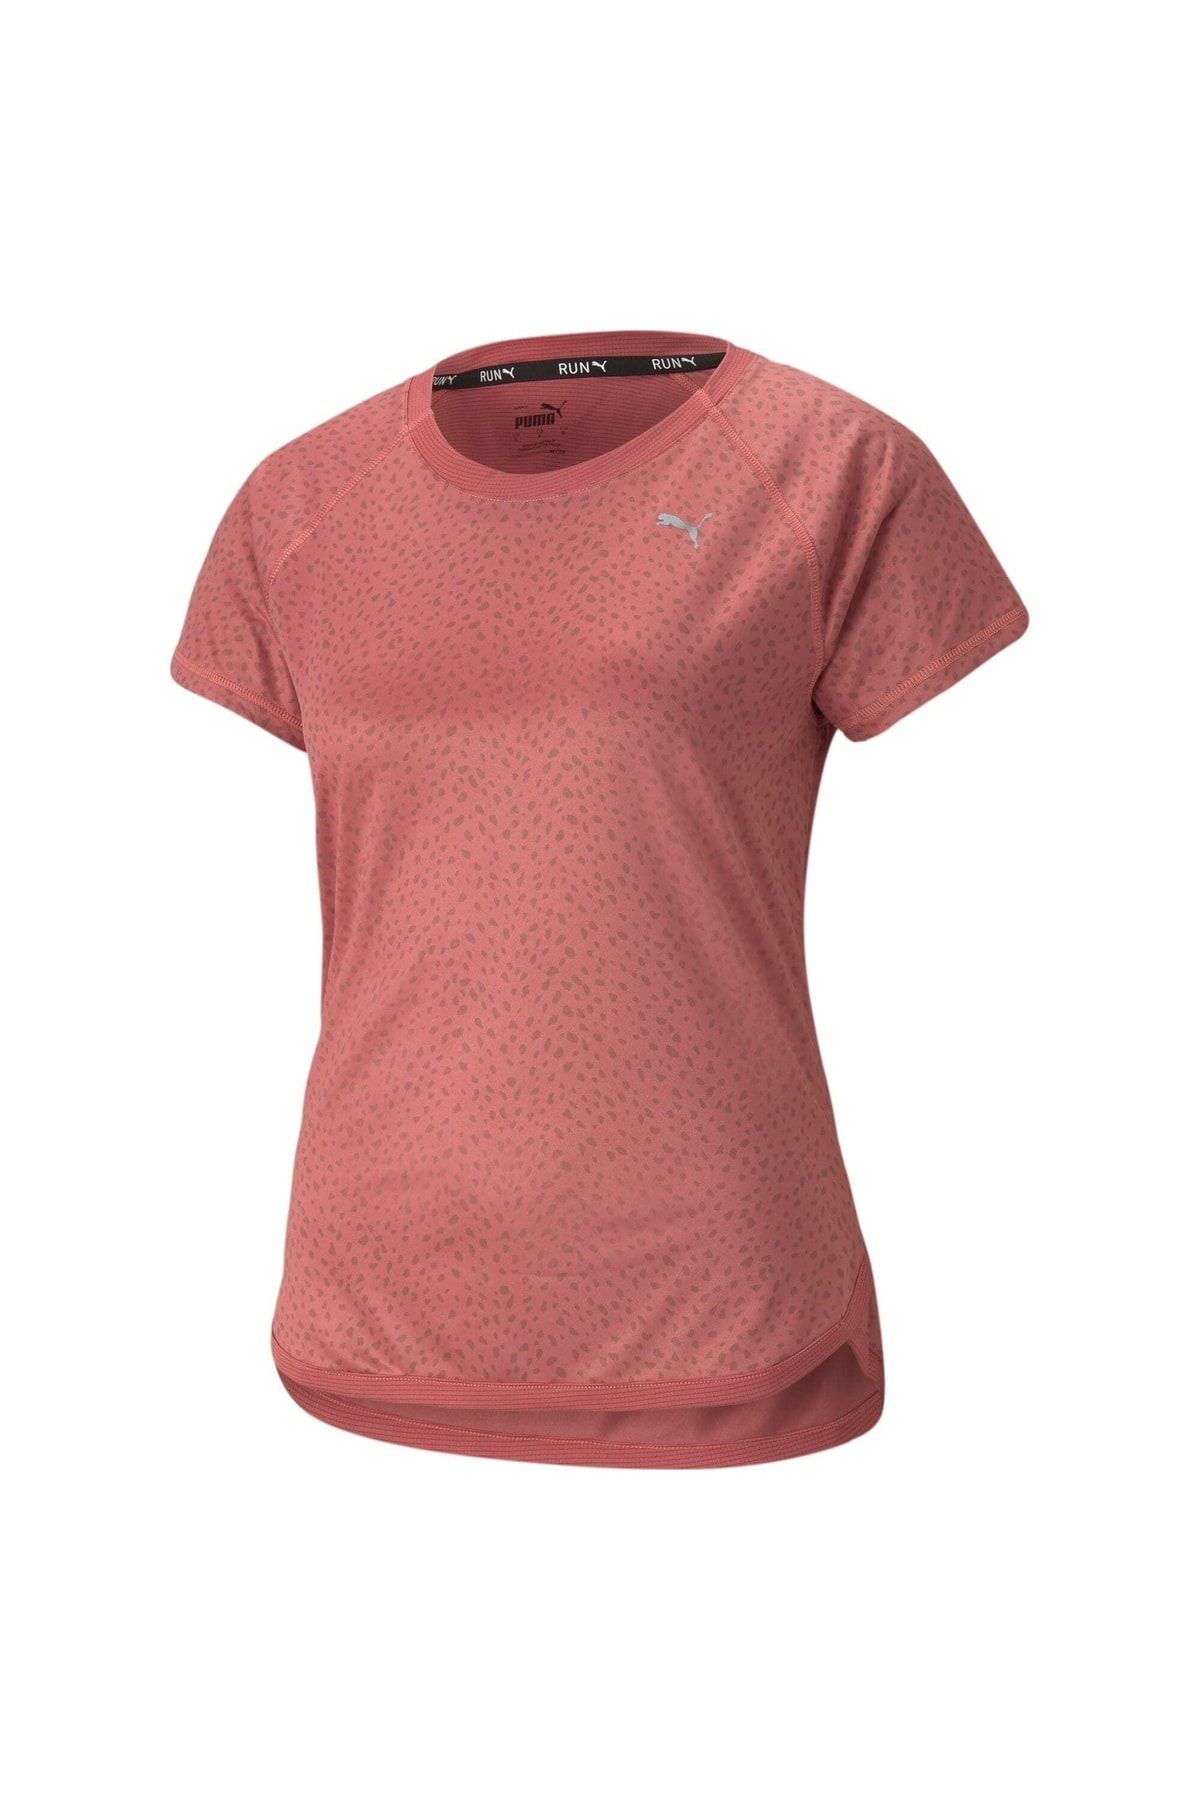 Puma Kısa Kollu Baskılı Kadın Koşu T-shirt